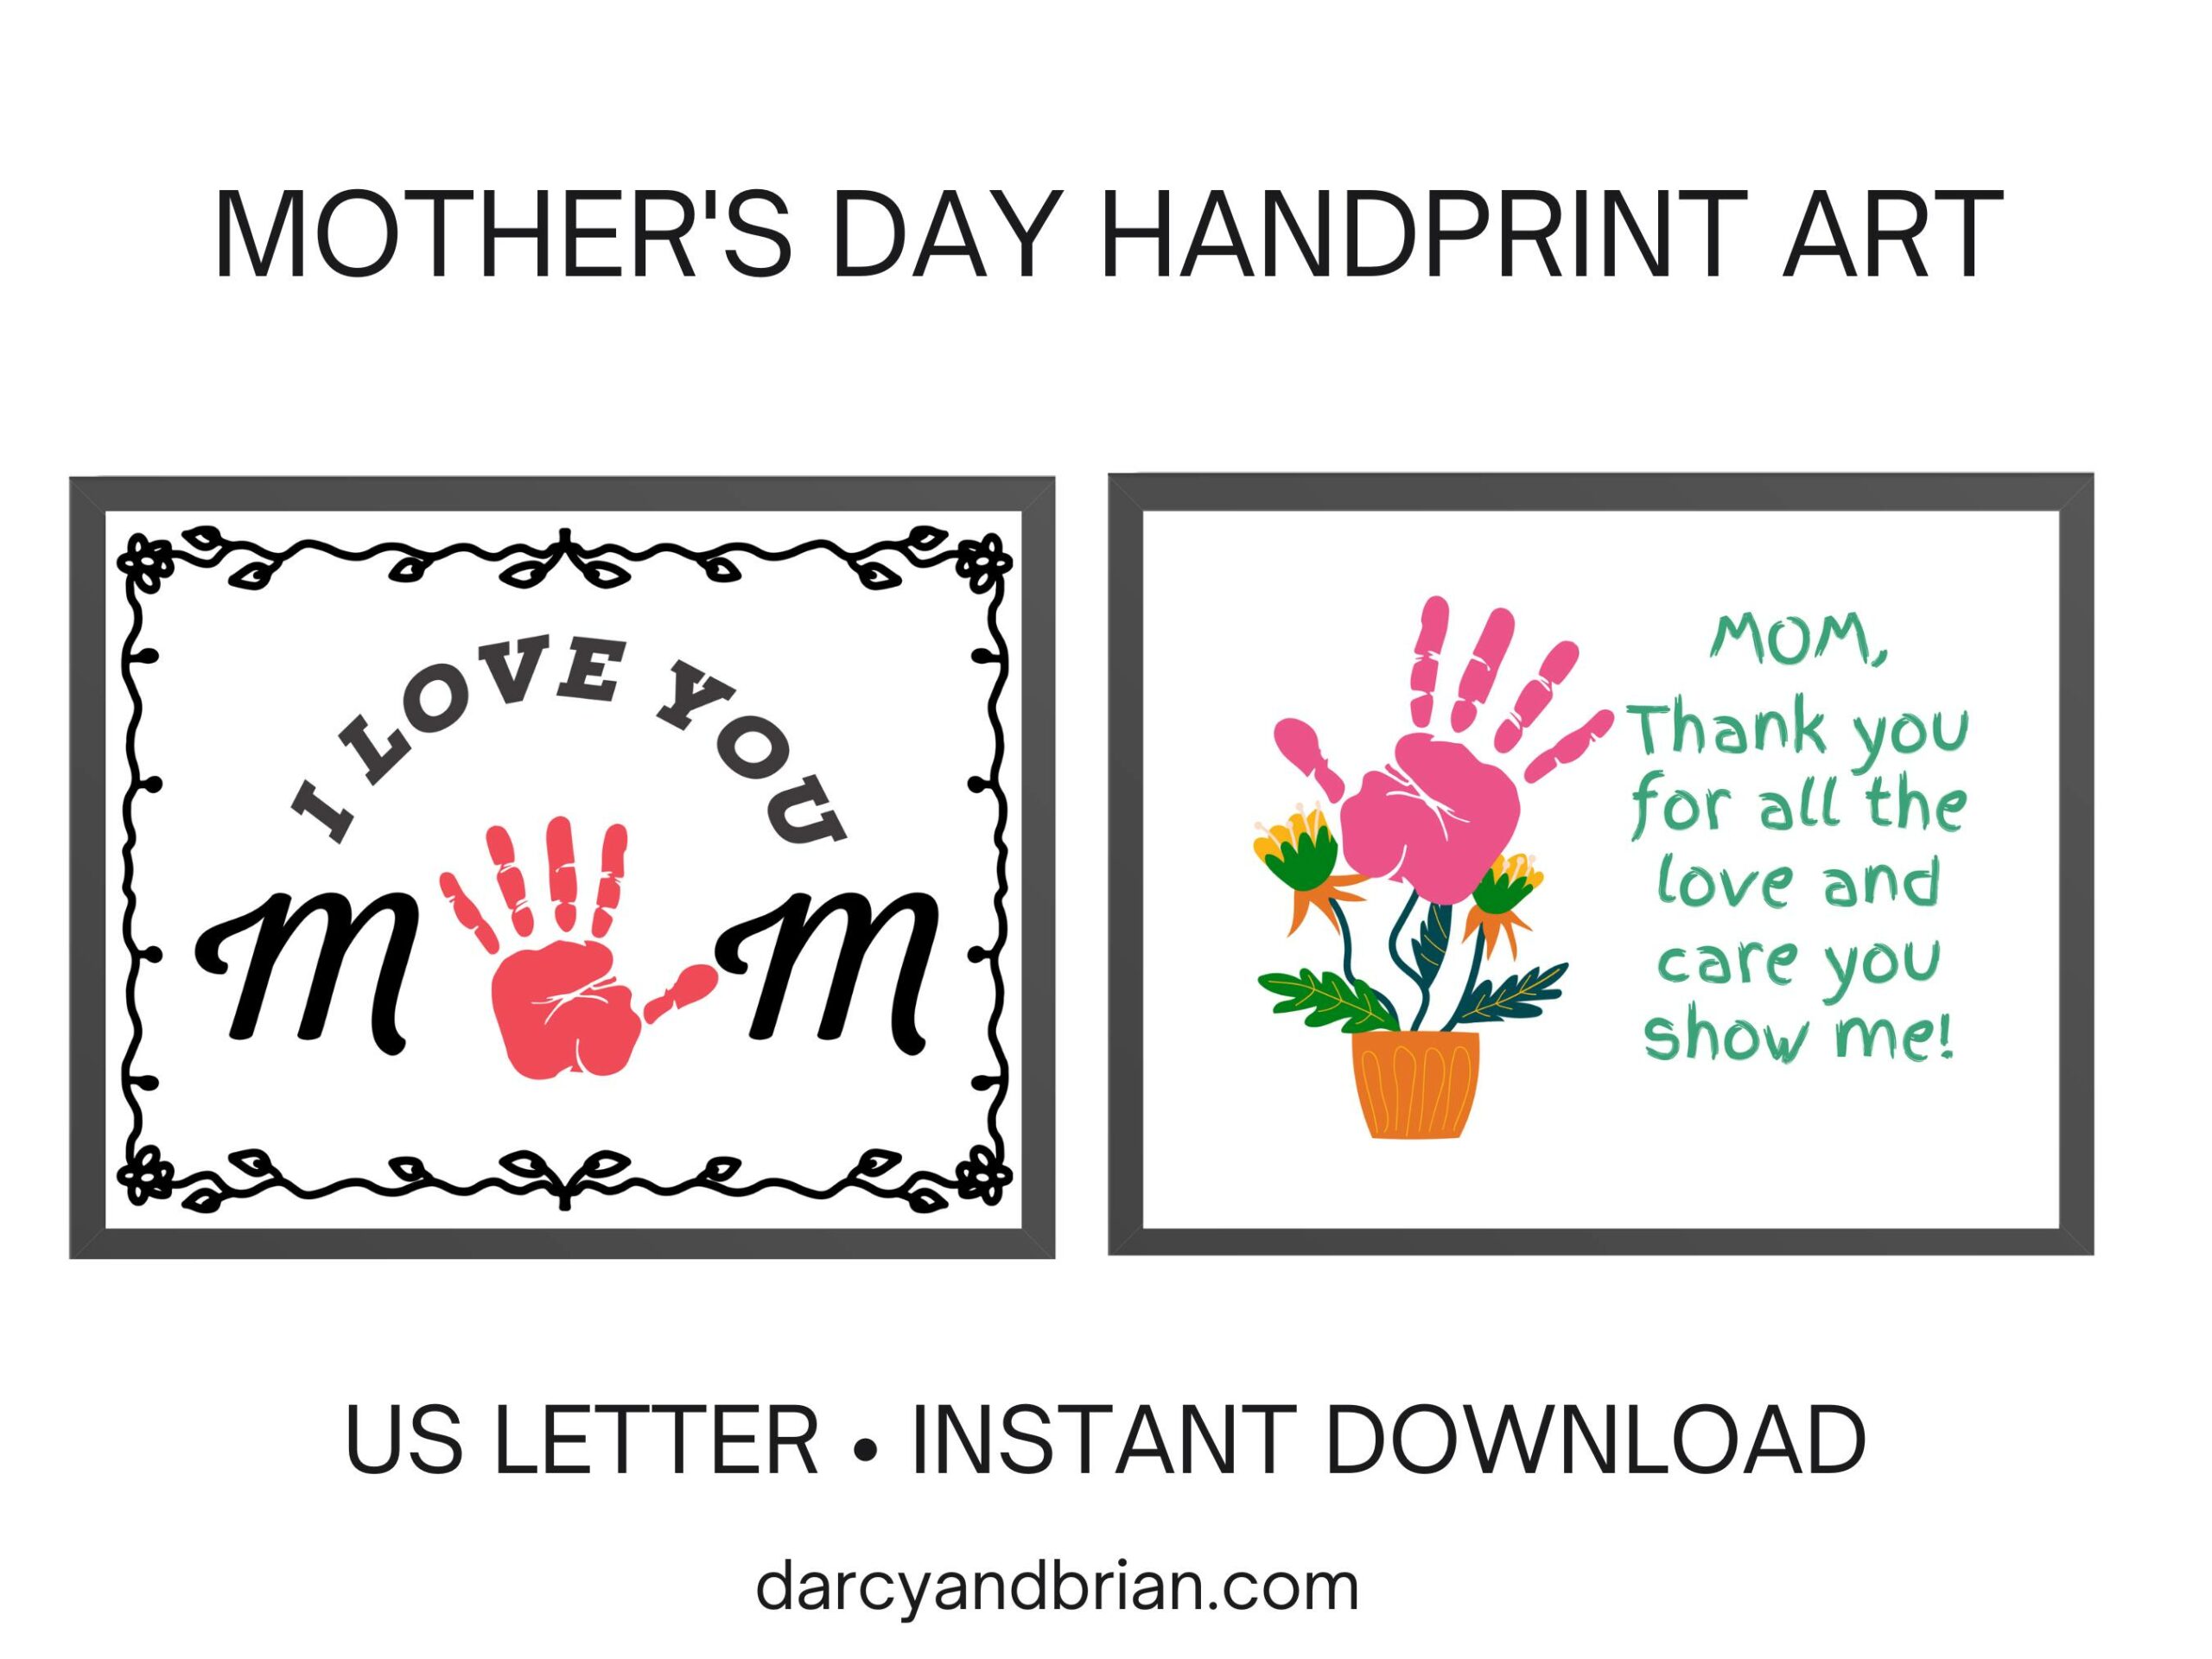 Mother’s Day Handprint Art Templates